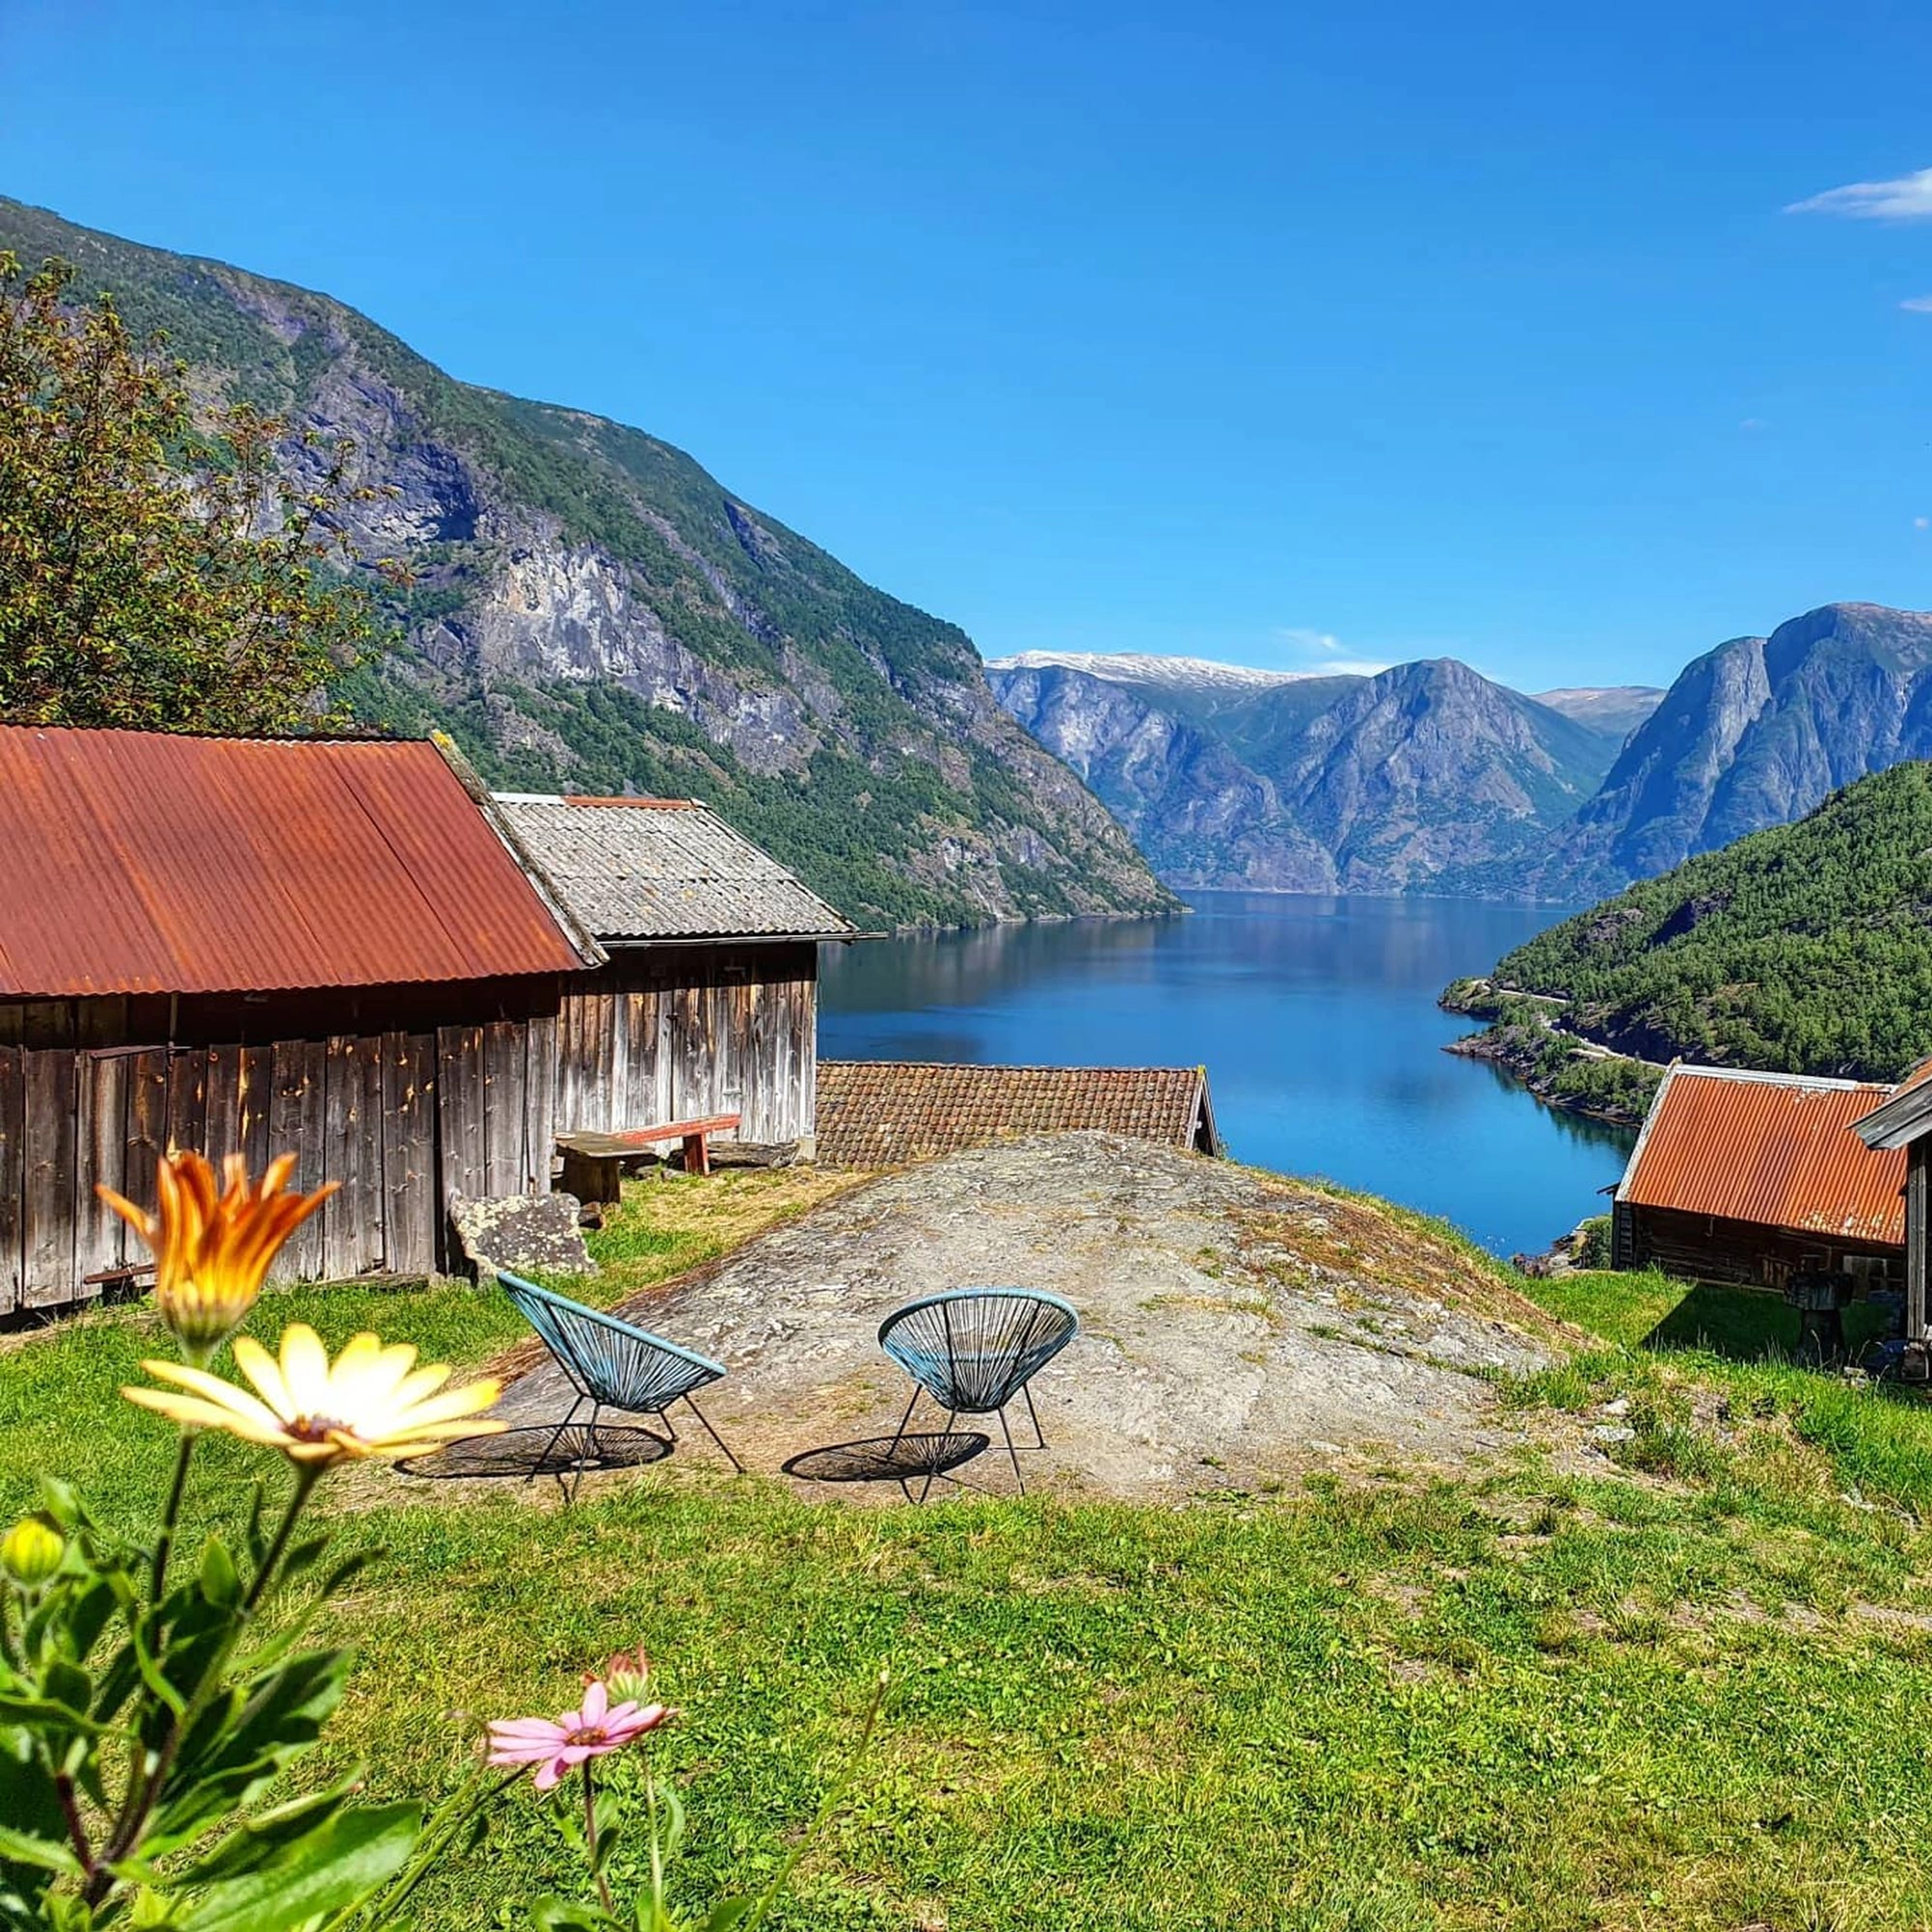 The Nærøyfjord - Kaupanger - Gudvangen, Norway